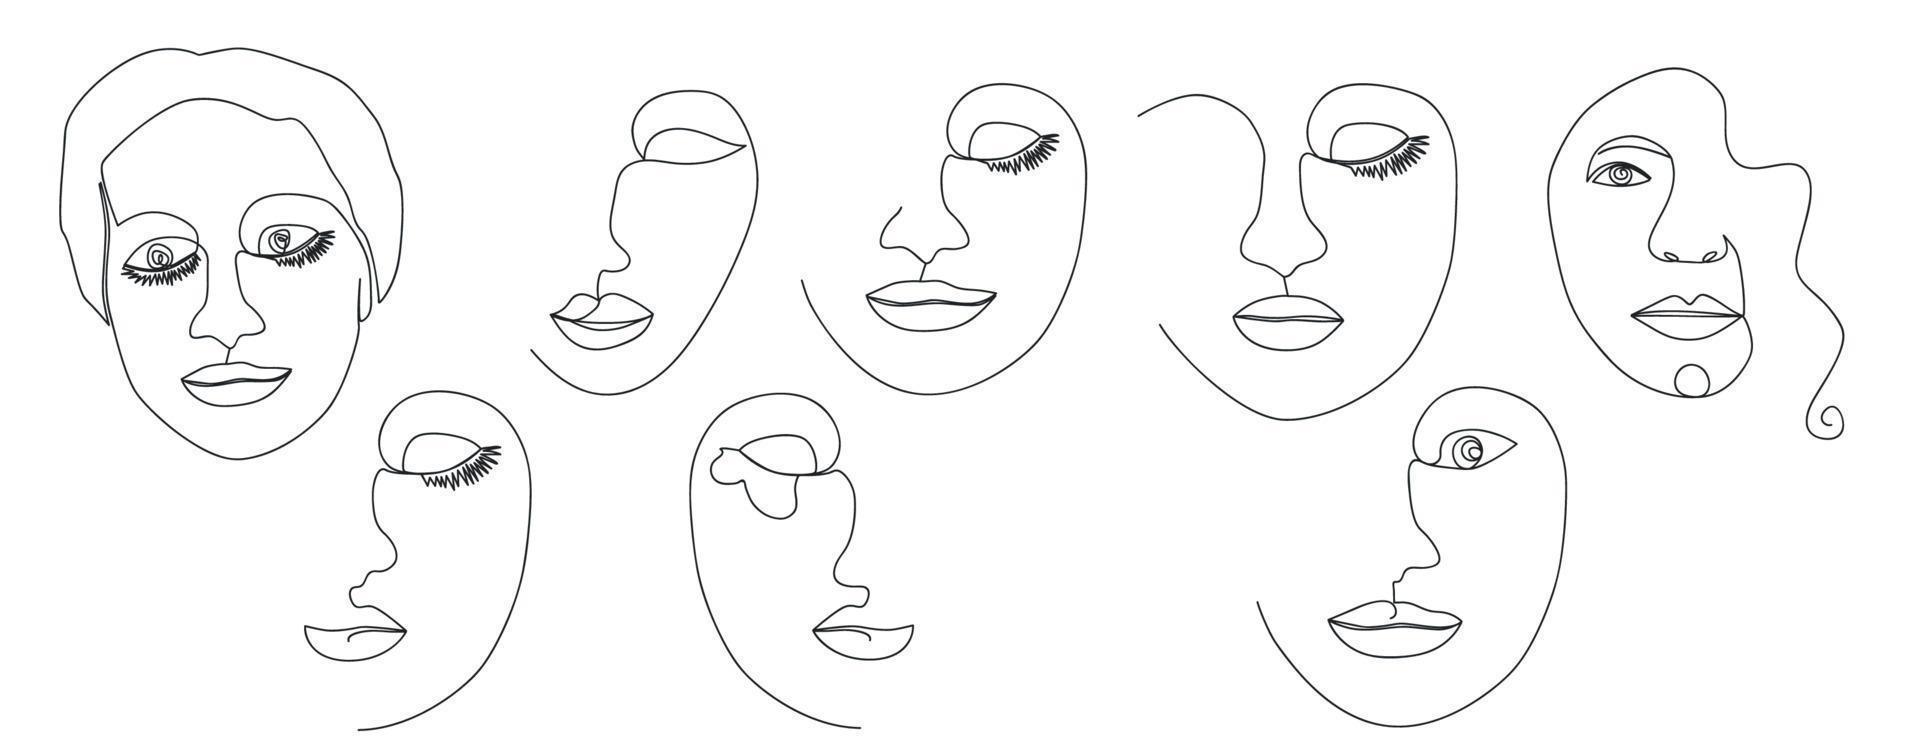 doorlopend lijn, tekening van reeks gezichten en kapsel, mode concept, vrouw schoonheid minimalistisch, illustratie vector